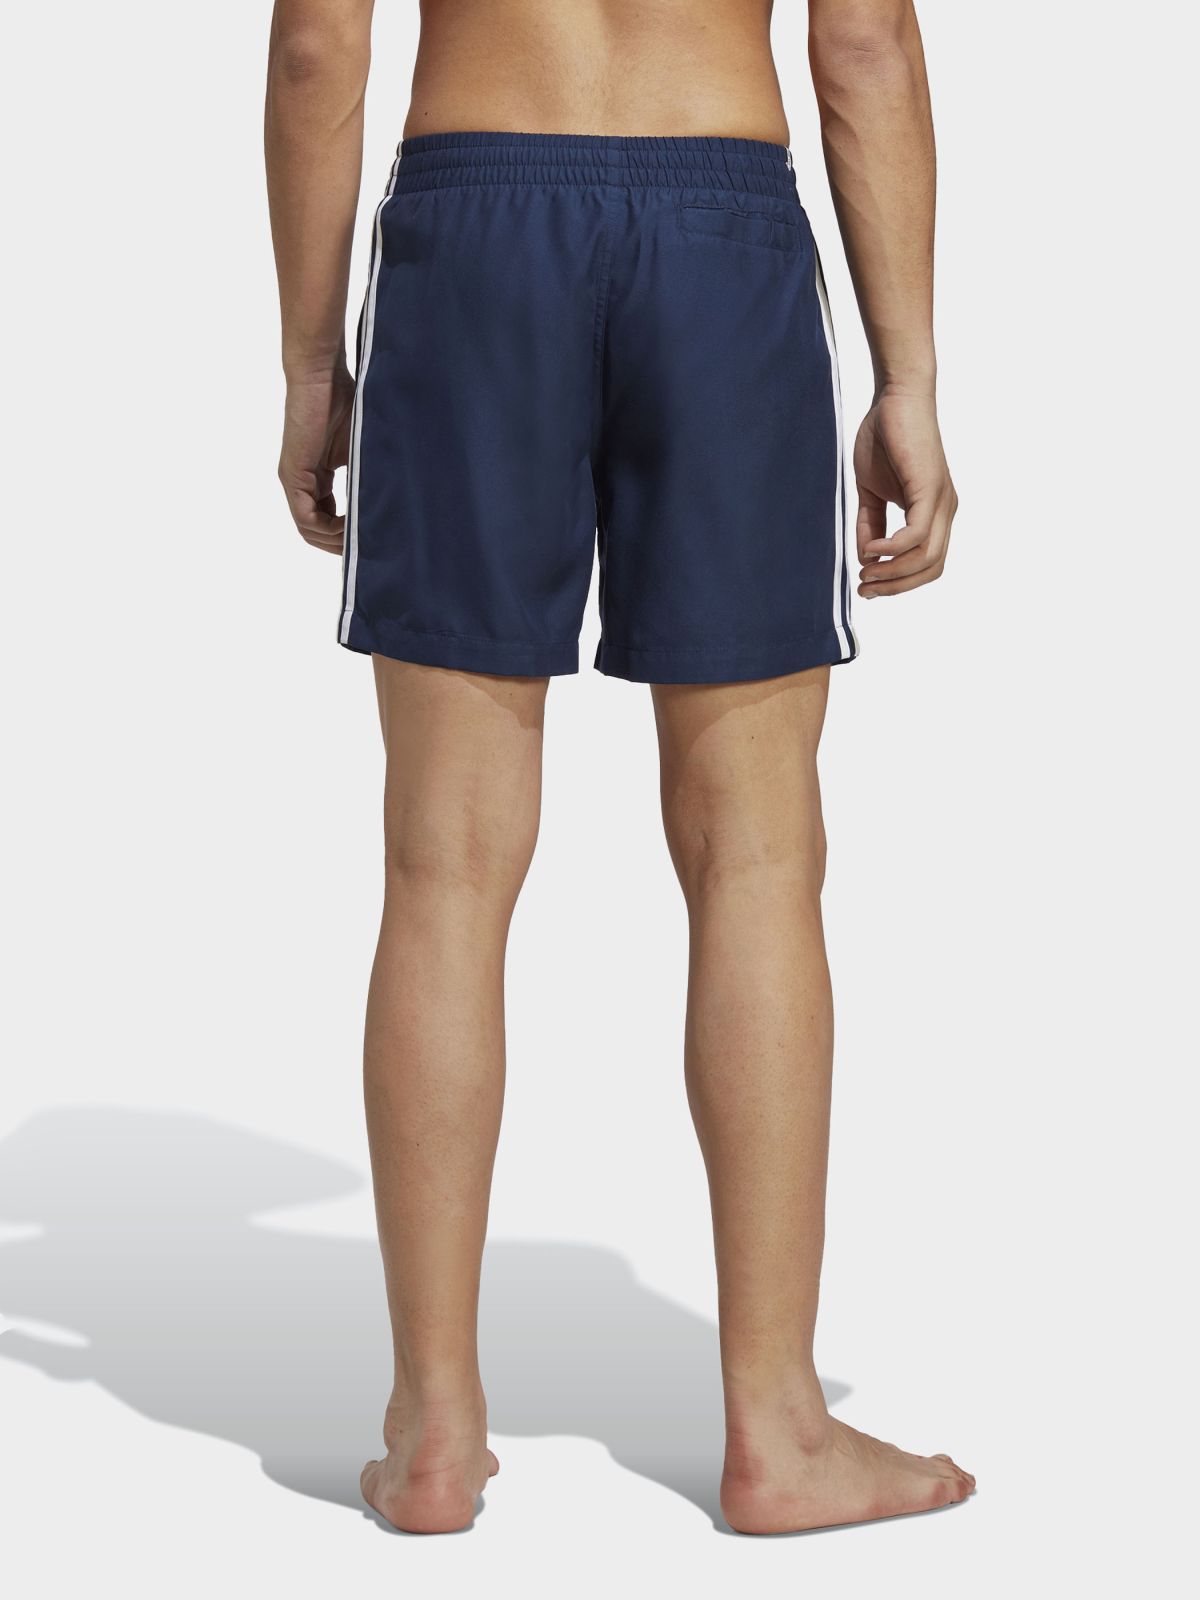  מכנסי בגד ים עם לוגו של ADIDAS Originals